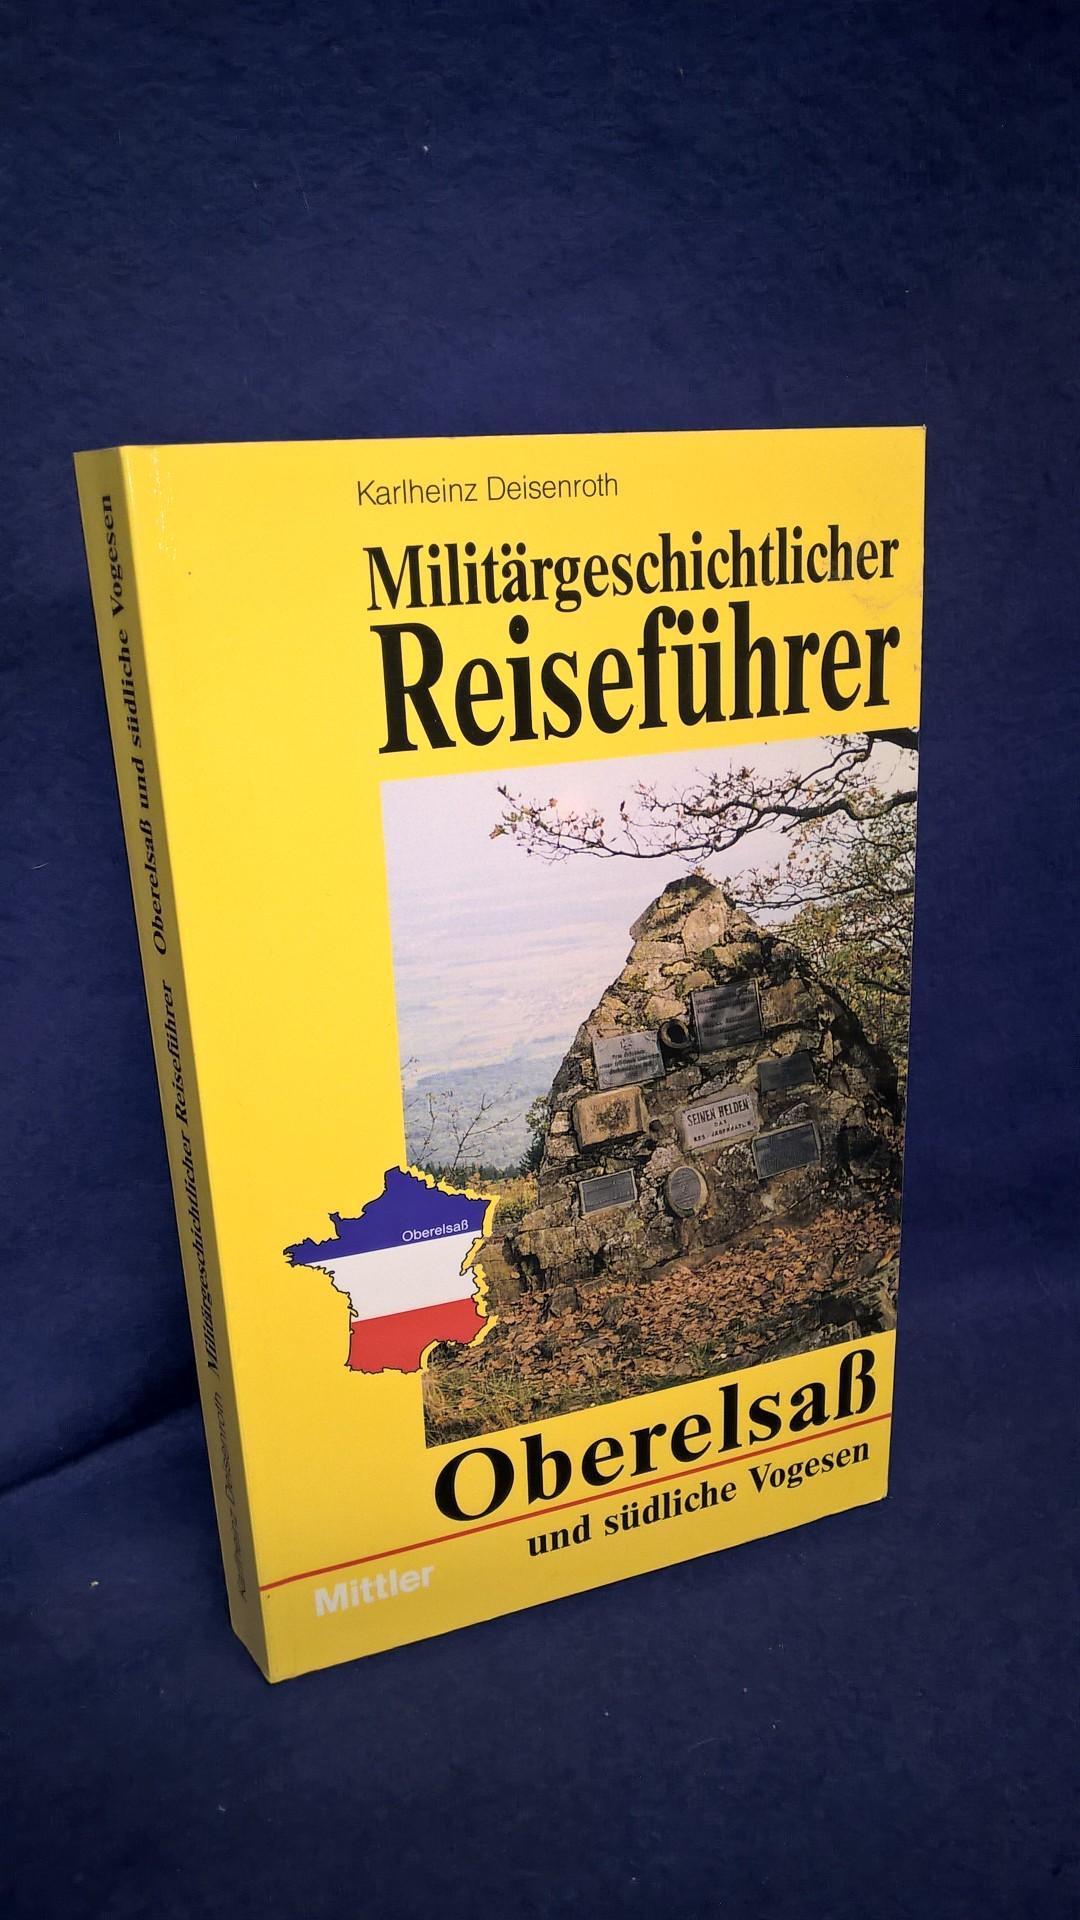 Militärgeschichtlicher Reiseführer. Oberelsaß und südliche Vogesen.